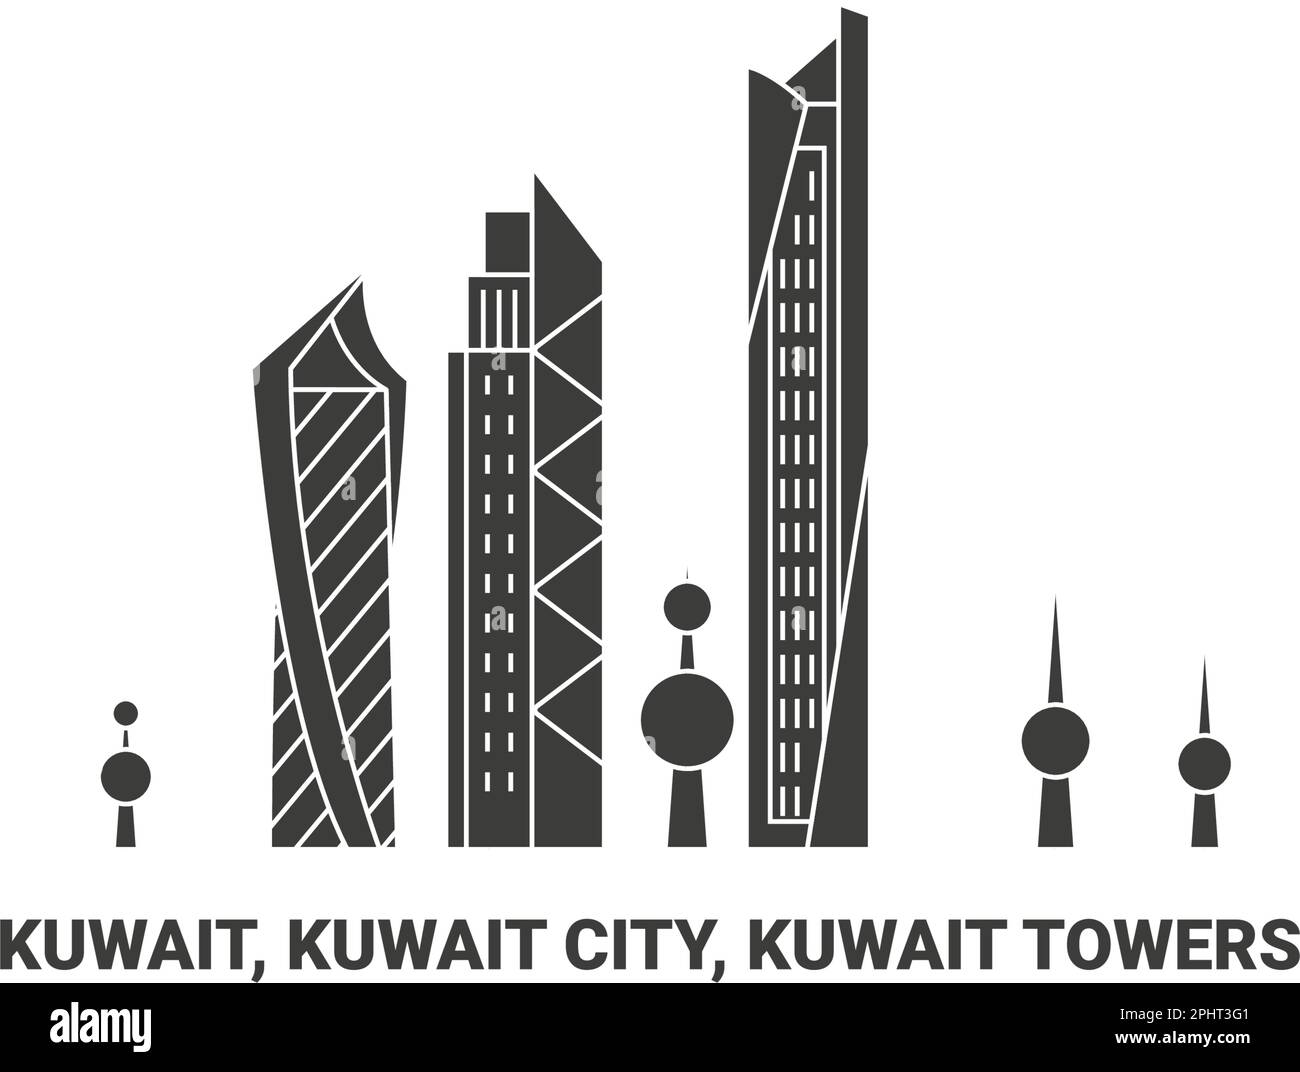 Kuwait, Kuwait City, Kuwait Towers, travel landmark vector illustration Stock Vector